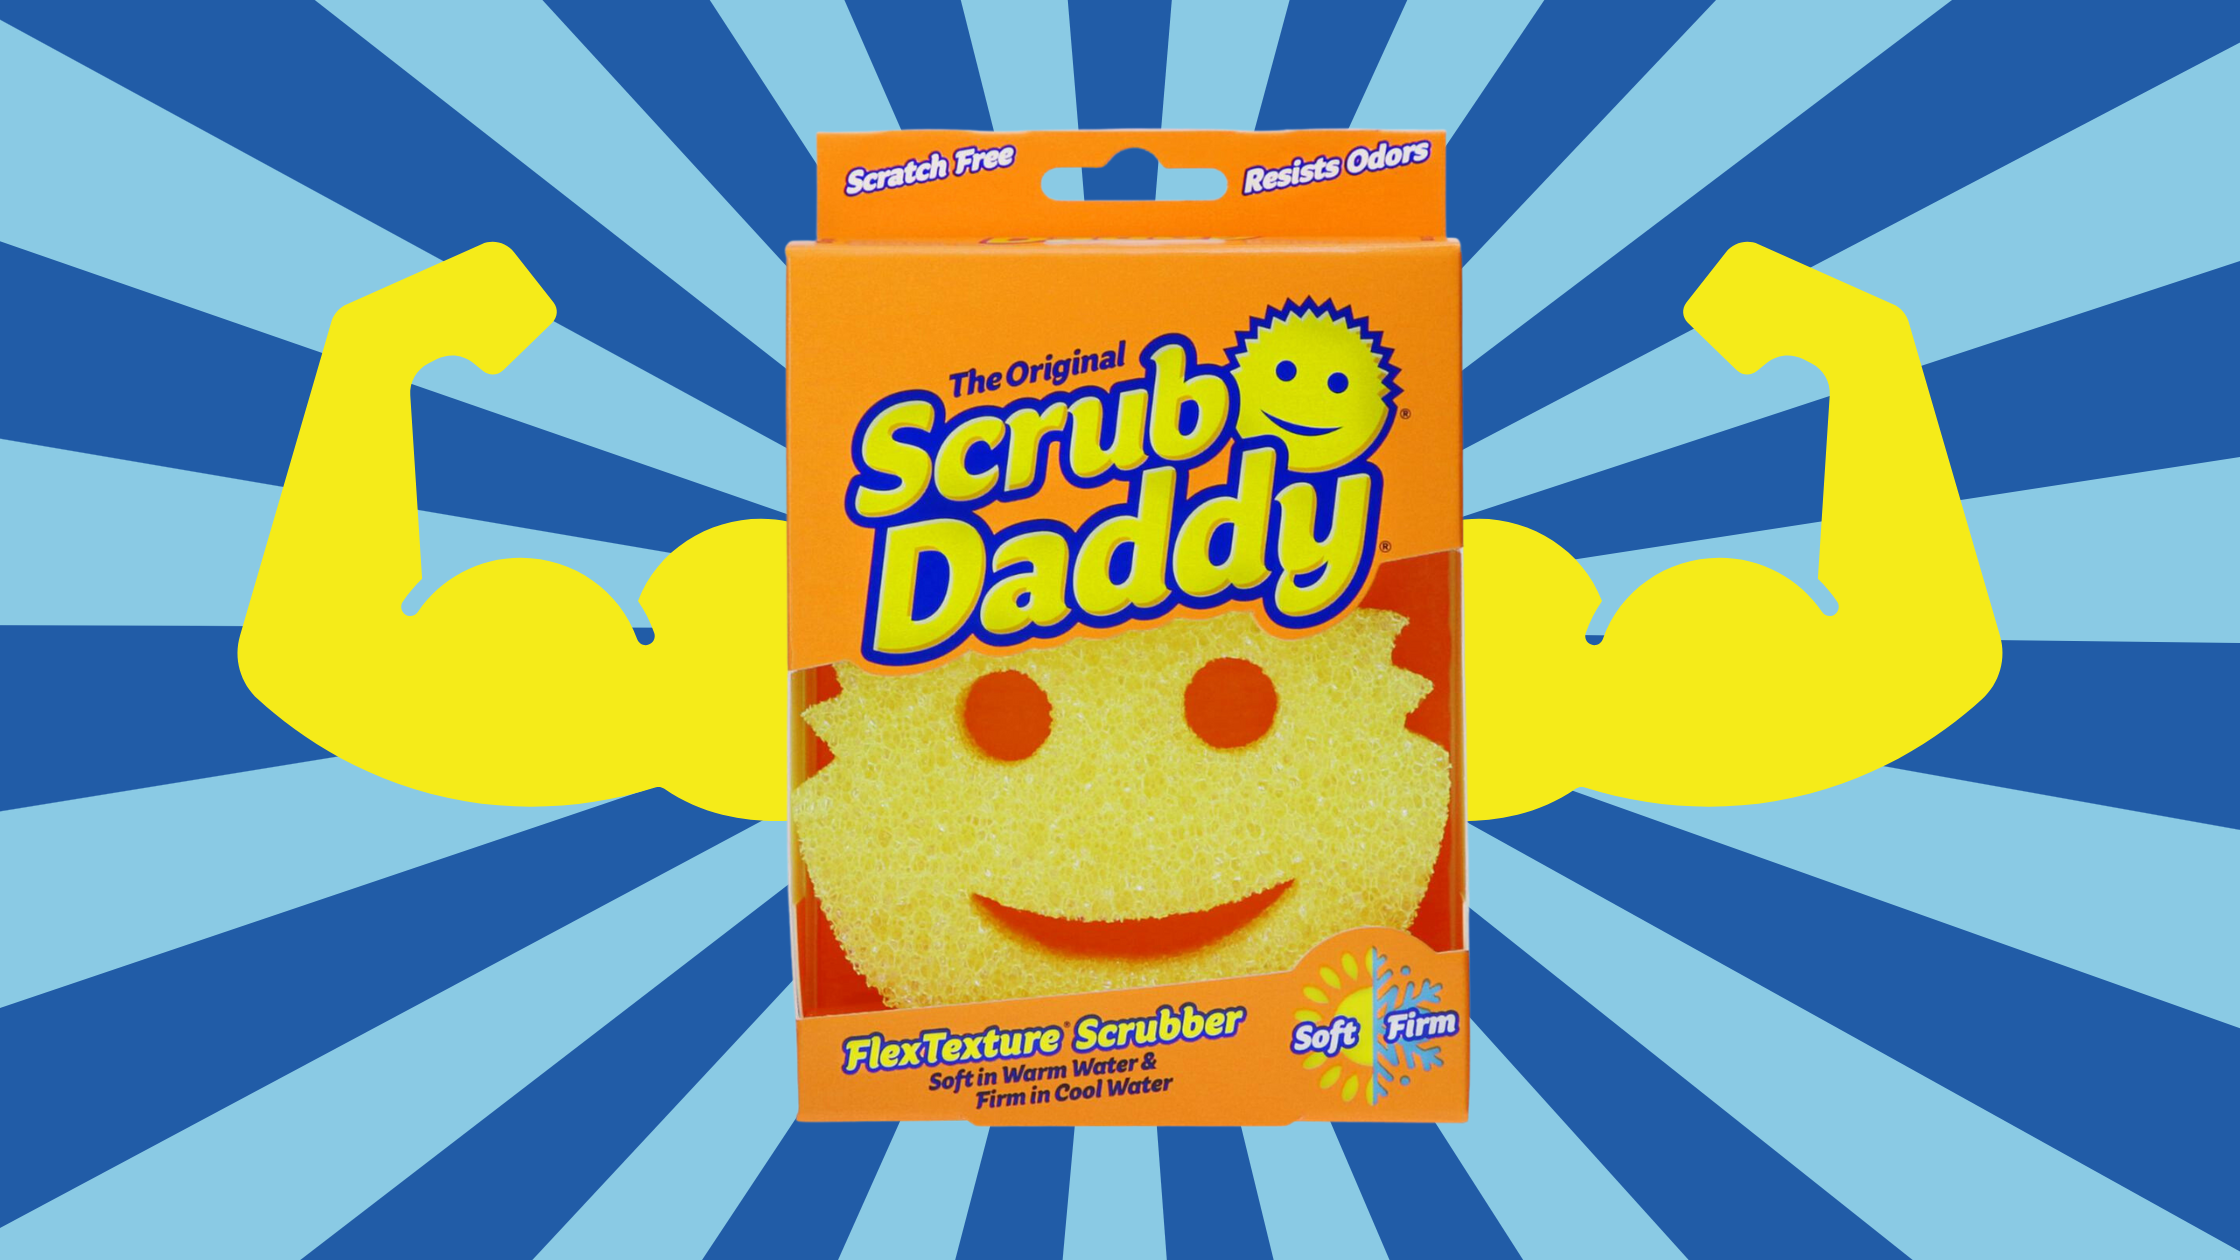 Scrub Daddy scrub daddy large sponge - big daddy - scratch-free